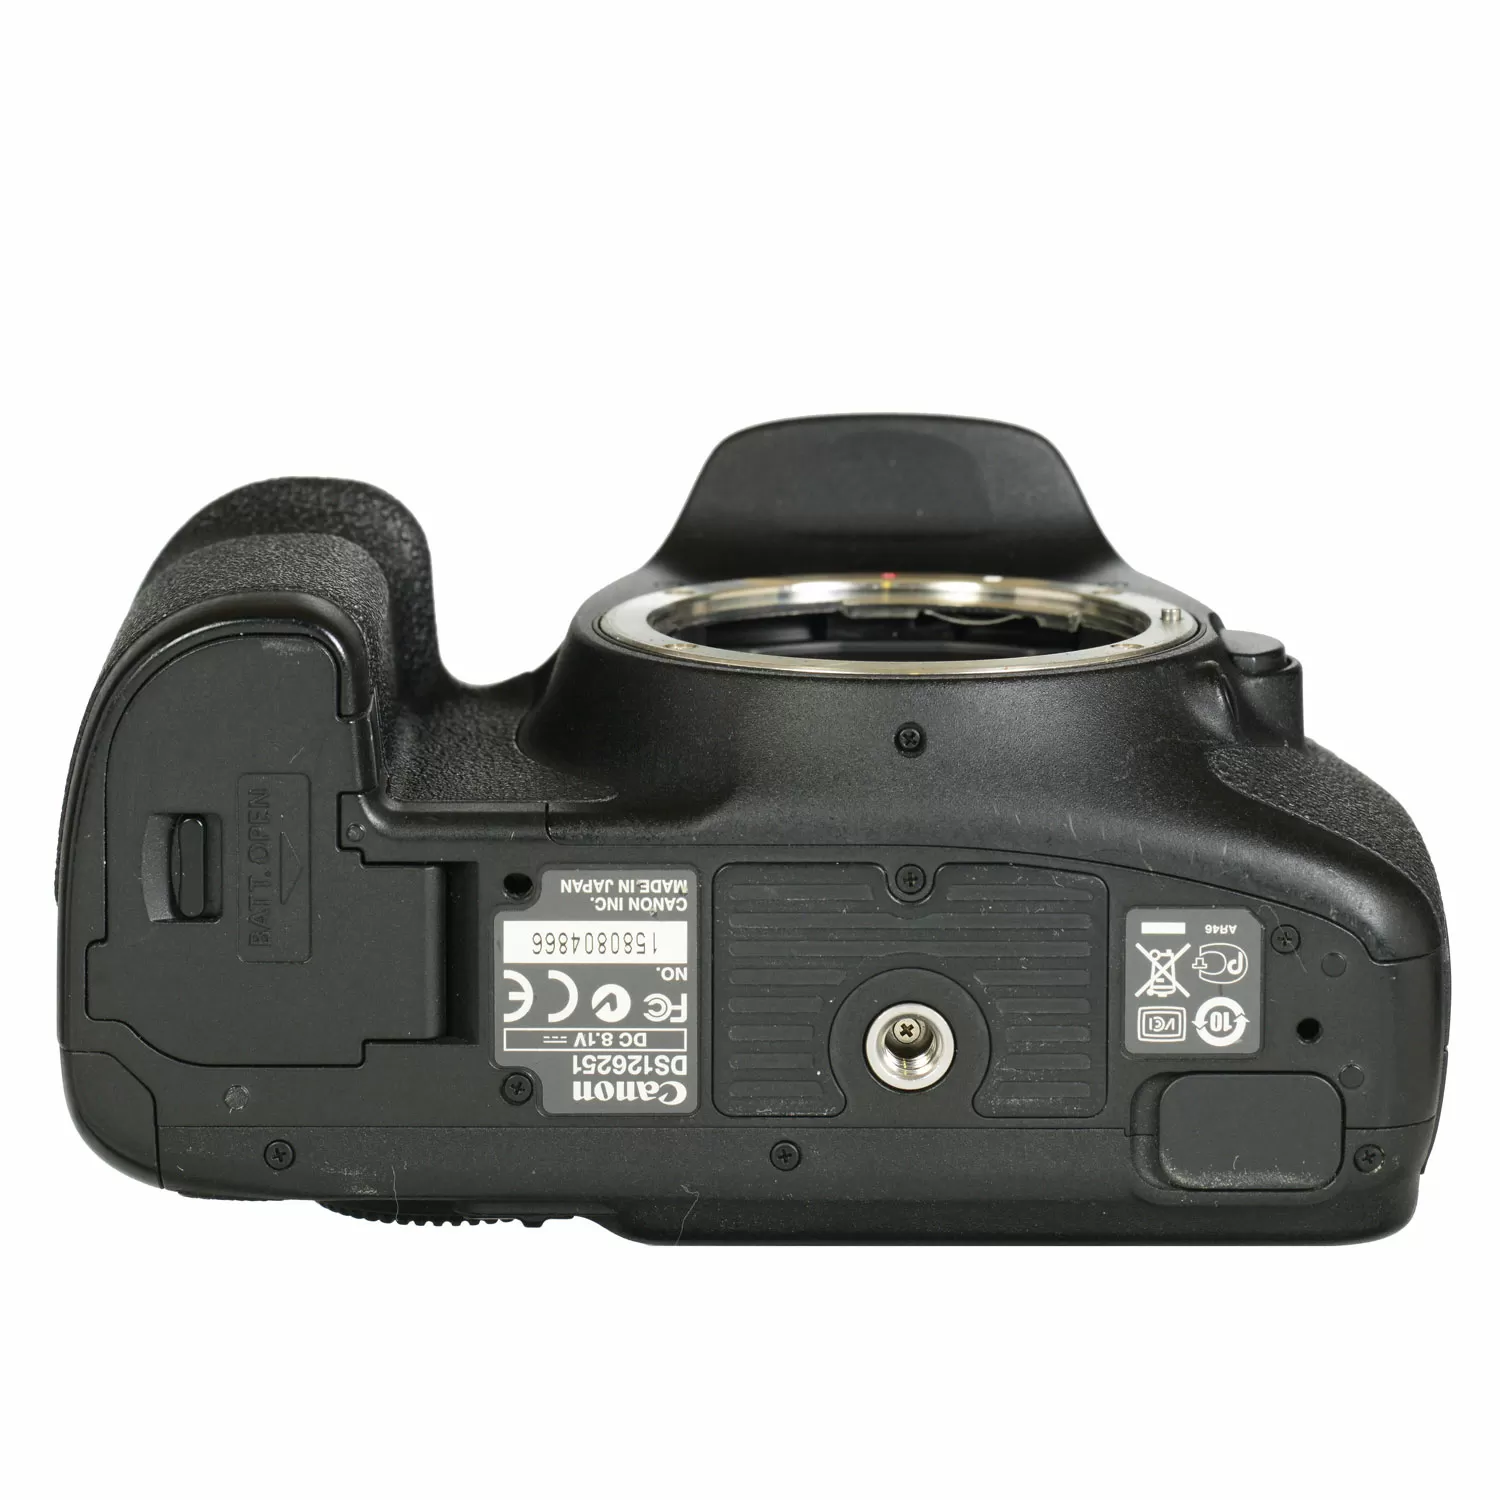 Canon EOS 7D Body б/у